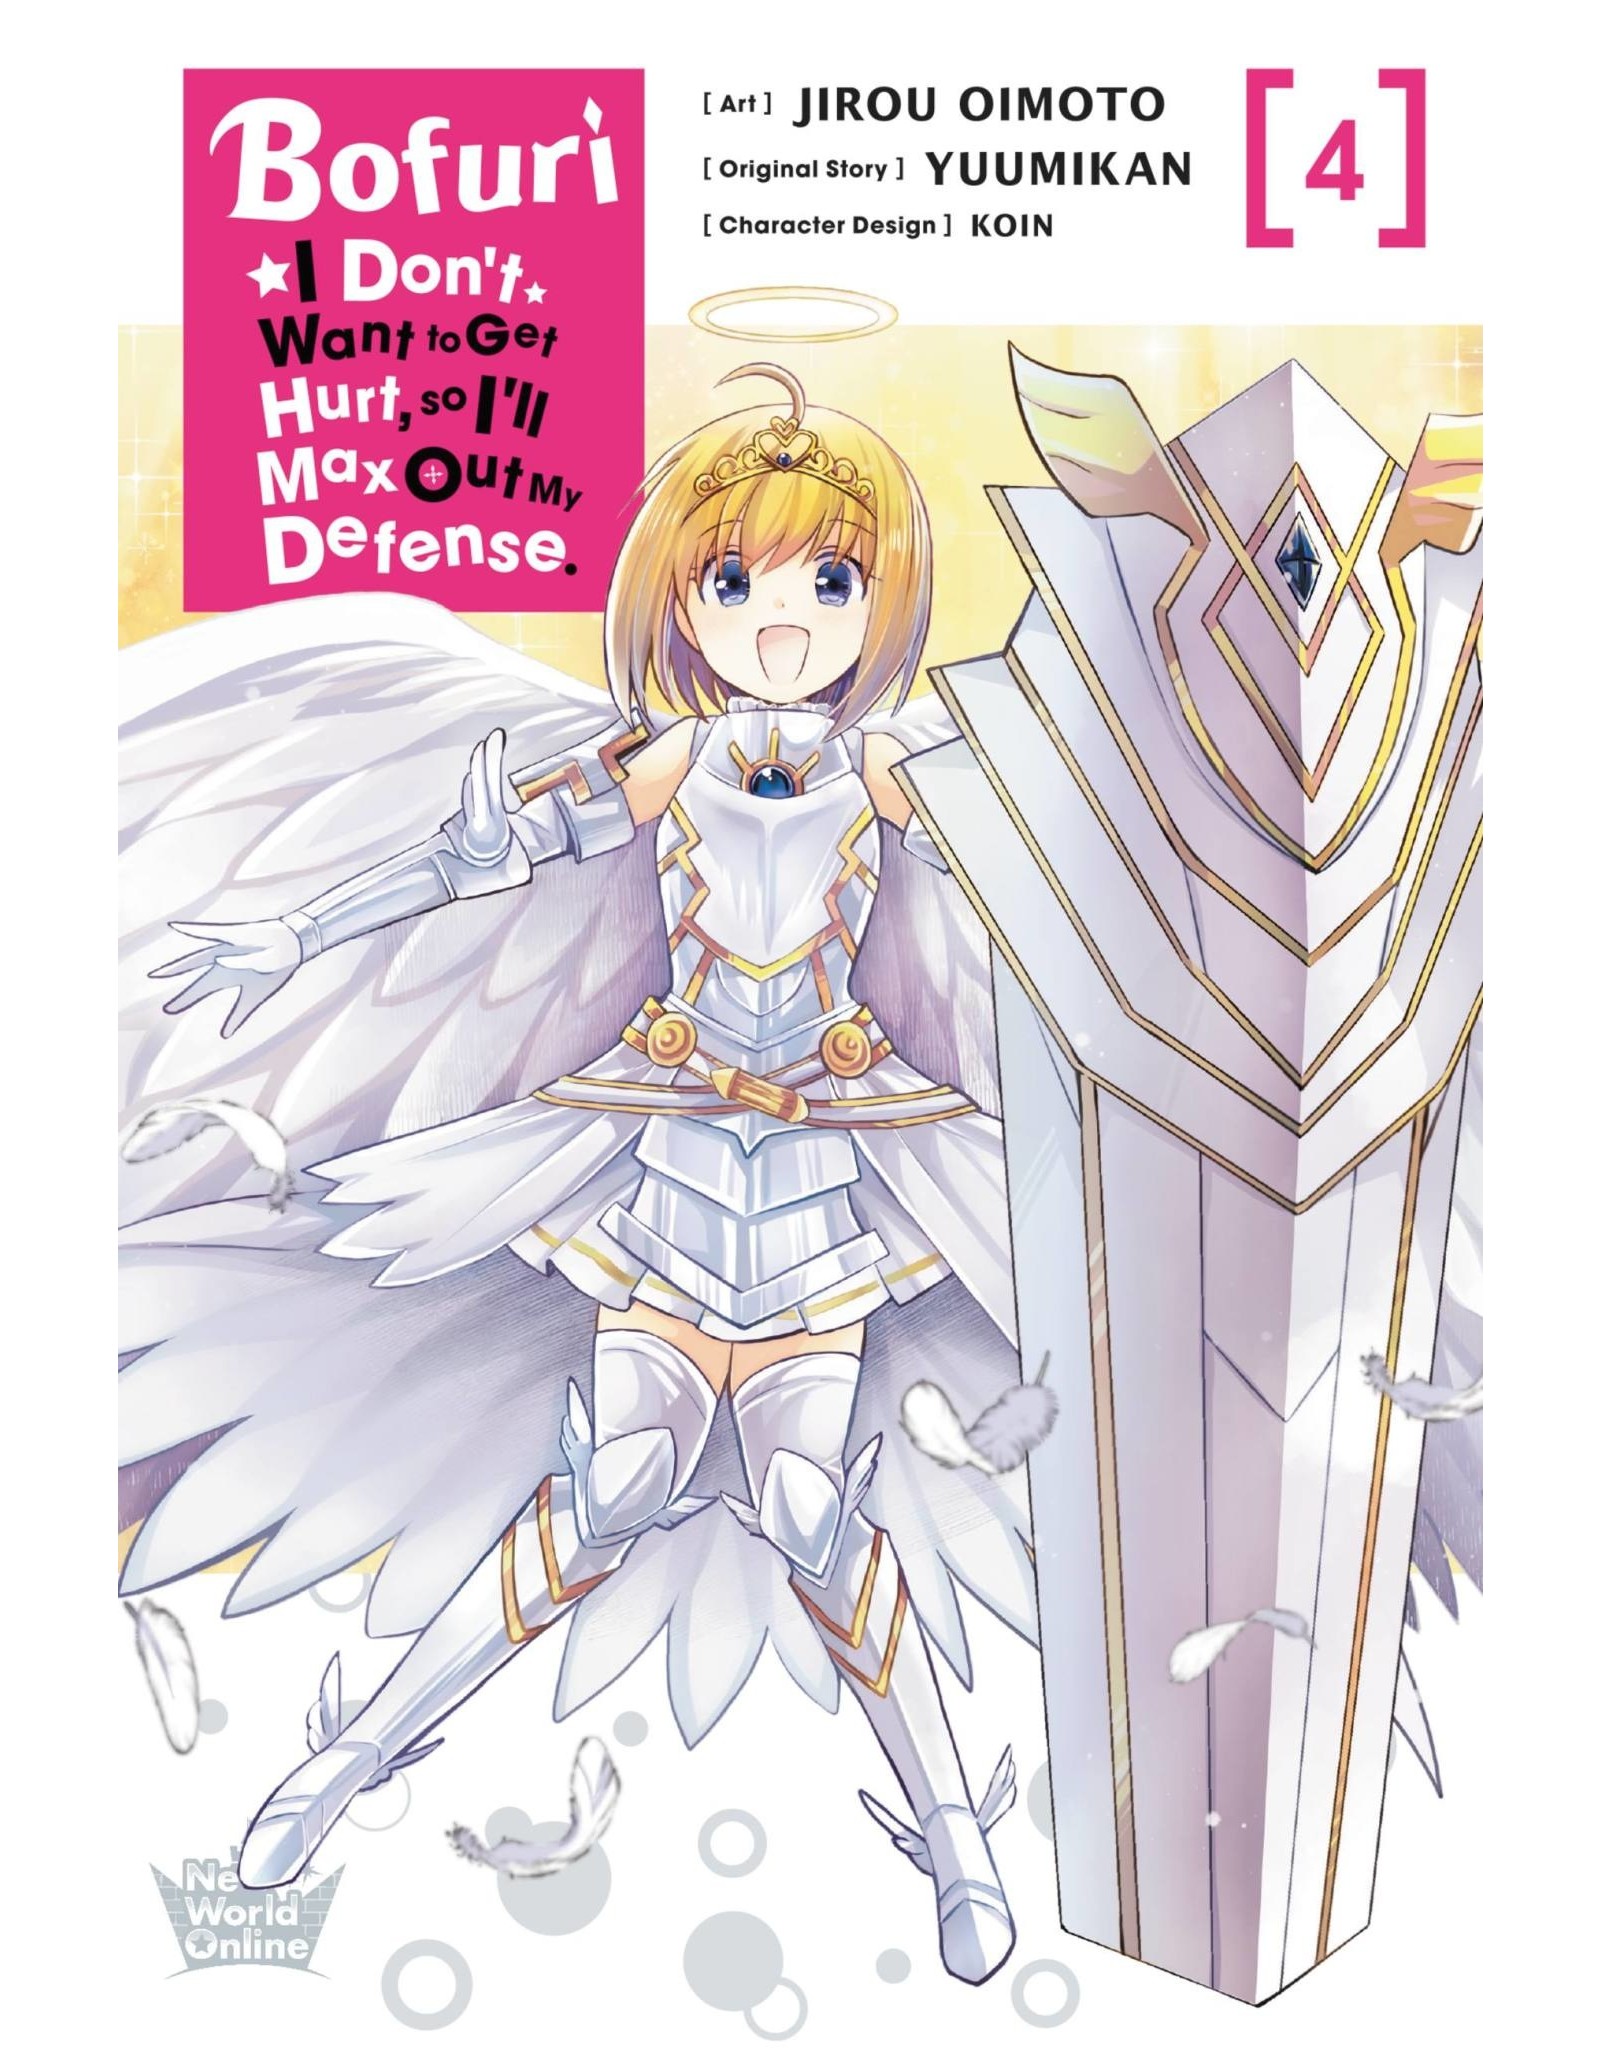 Bofuri: I Don't Want to Get Hurt, so I'll Max Out My Defense 04 (English) - Manga